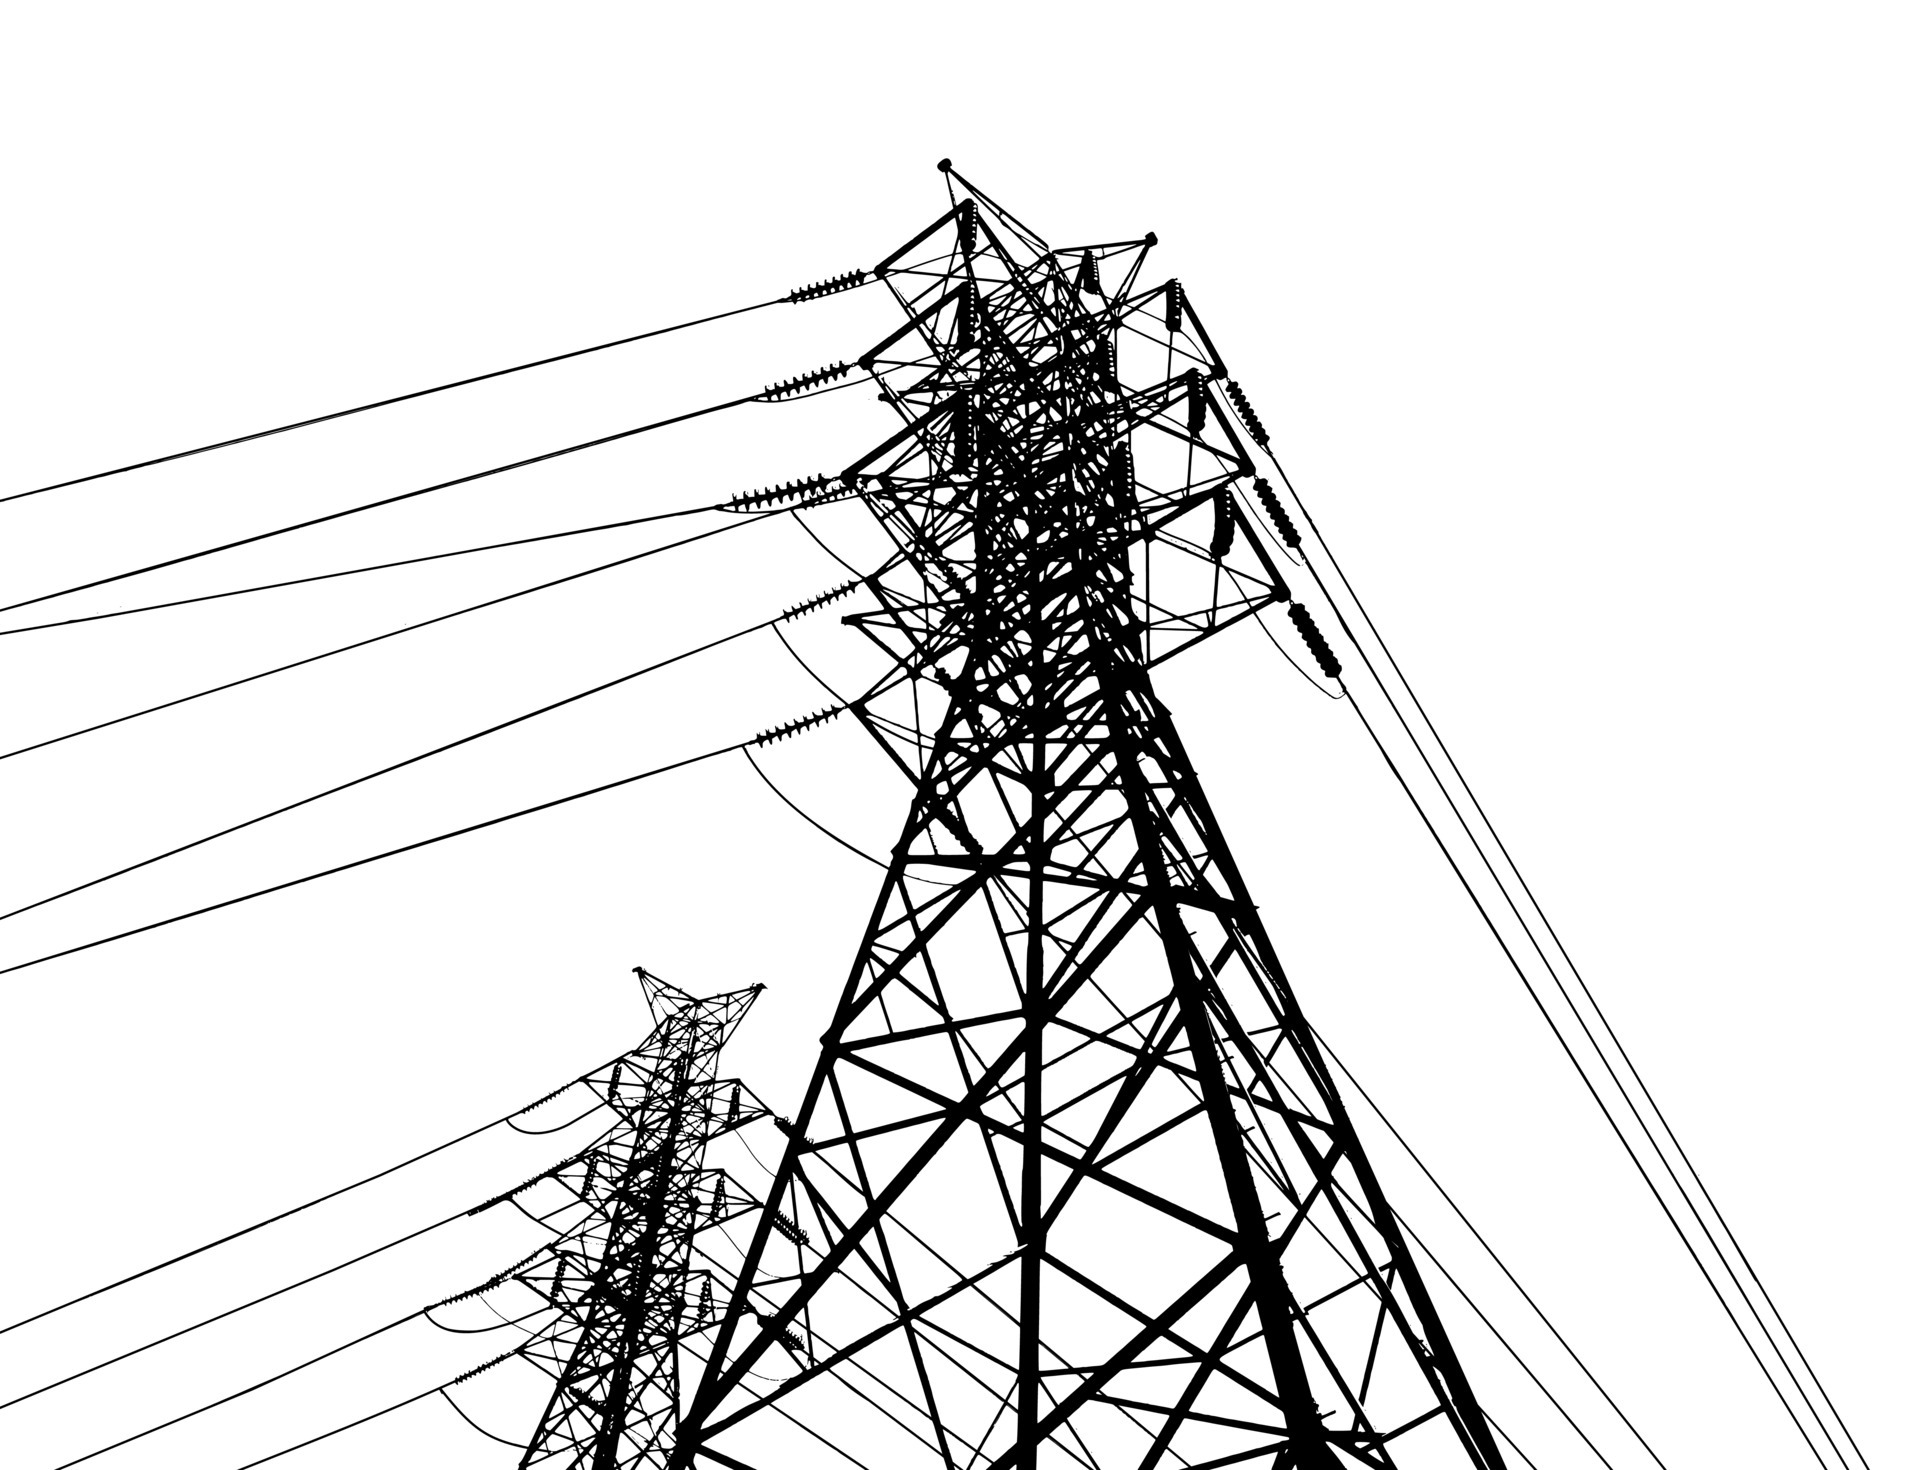 poste eléctrico .sistemas de transmisión de alto voltaje. una red de torres  eléctricas de alta tensión interconectadas de transmisión de energía  eléctrica. líneas suministra electricidad al texto. pilón, red de postes.  4296182